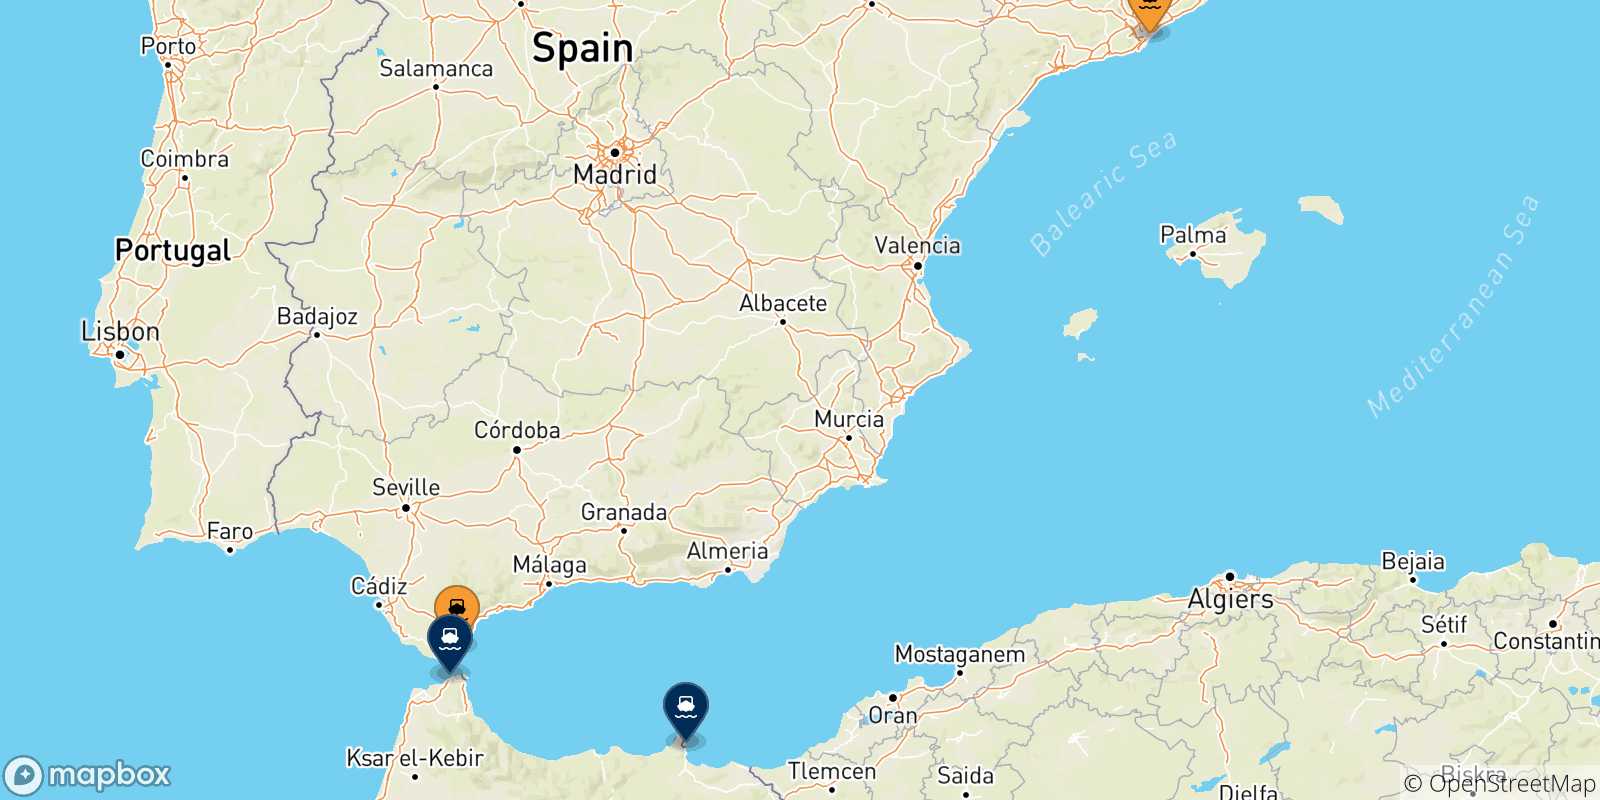 Mappa delle possibili rotte tra la Spagna e il Marocco